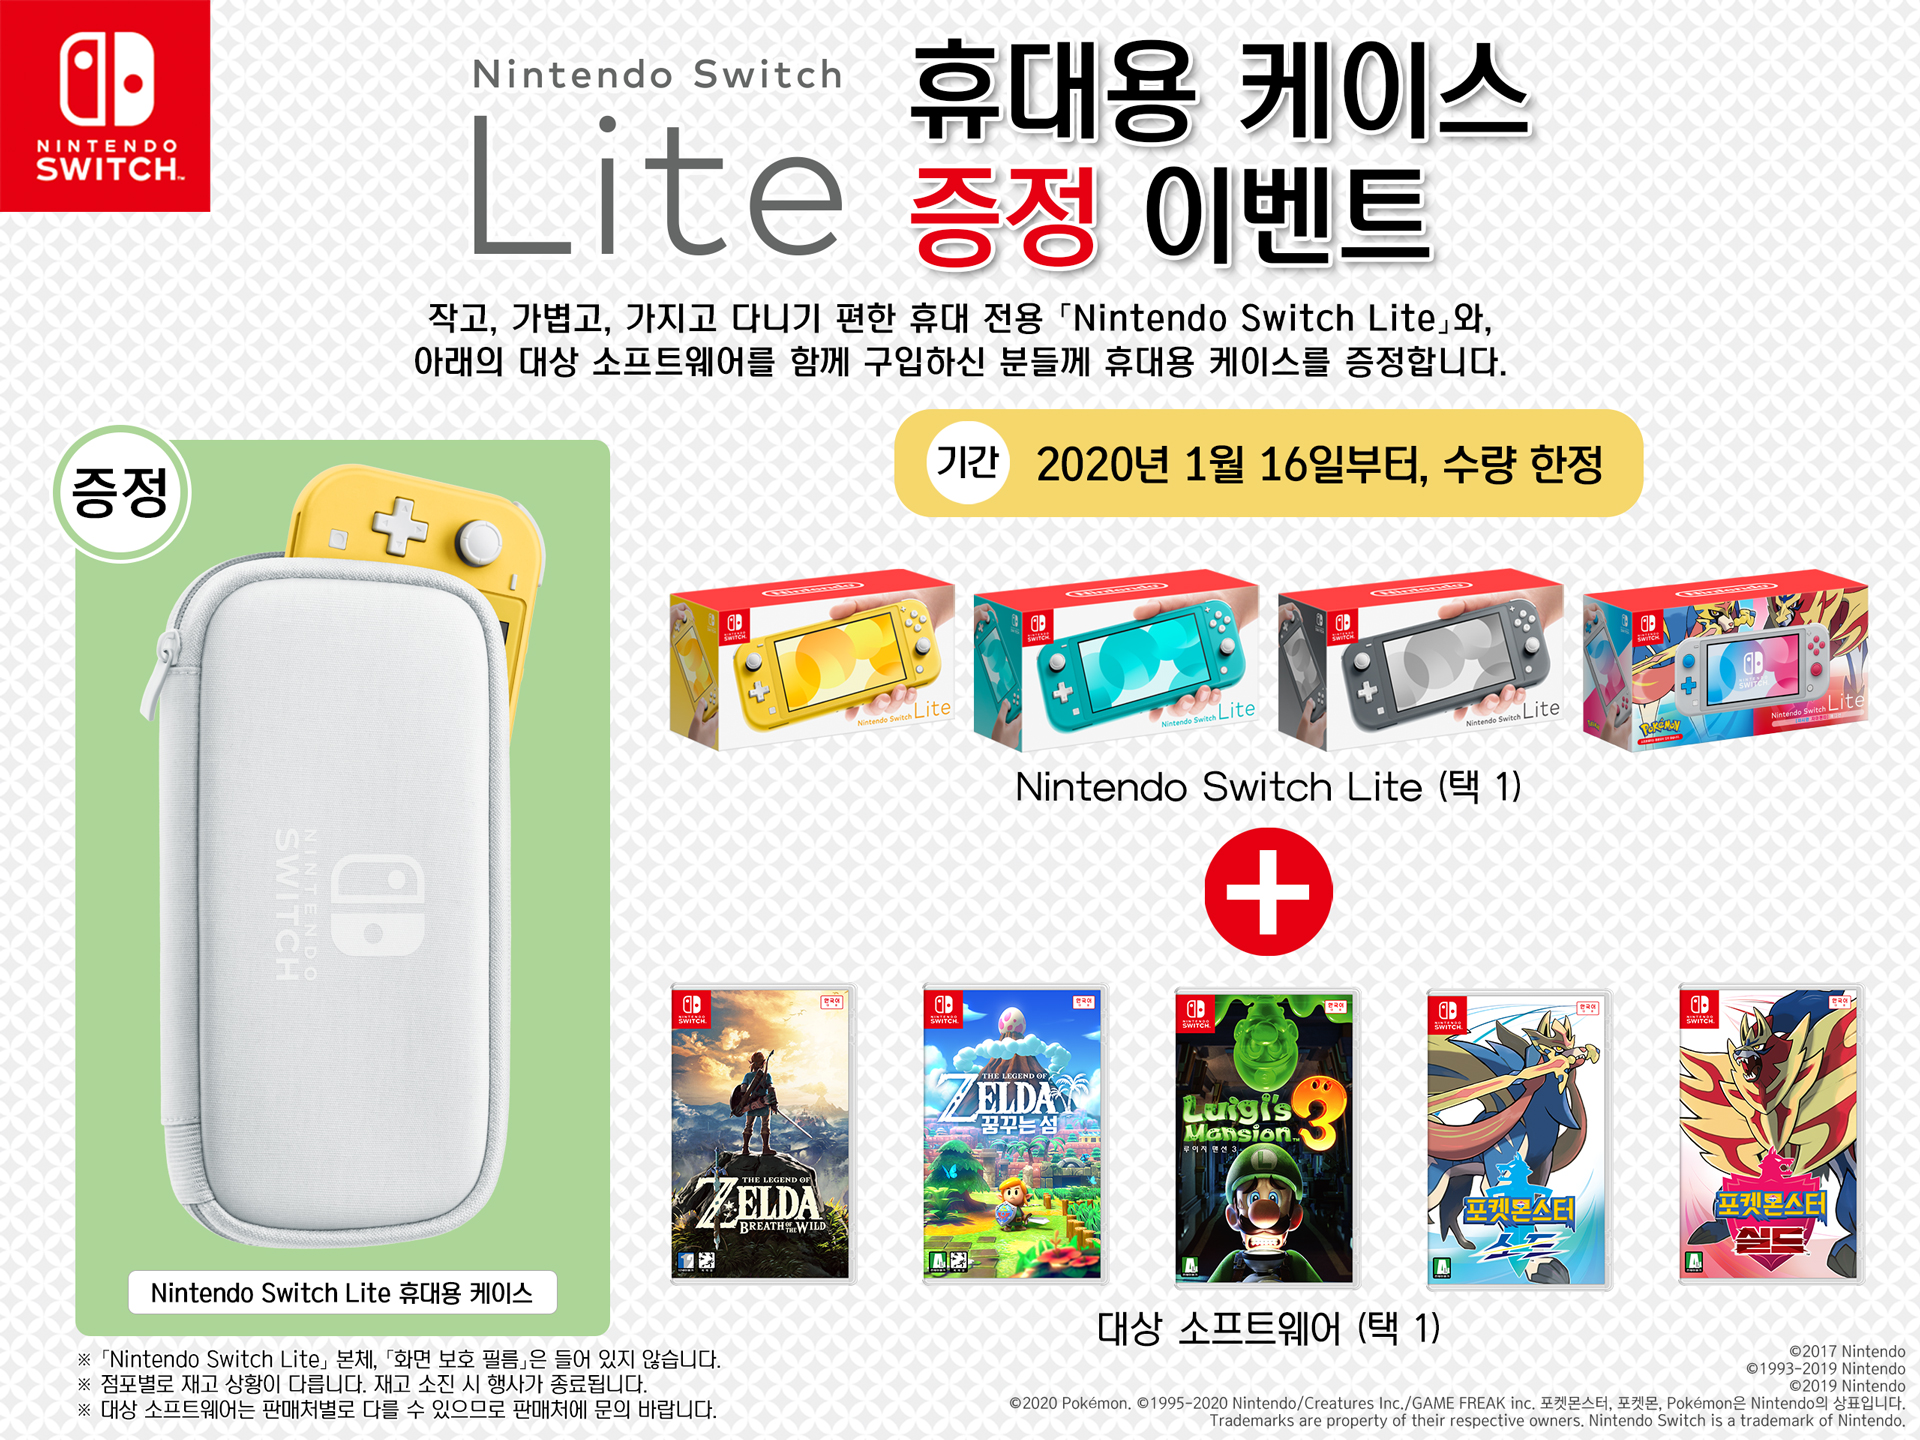 Switch Lite本体 と対象ソフトを一緒に購入した方に キャリングケース をプレゼントするキャンペーンが韓国で実施中